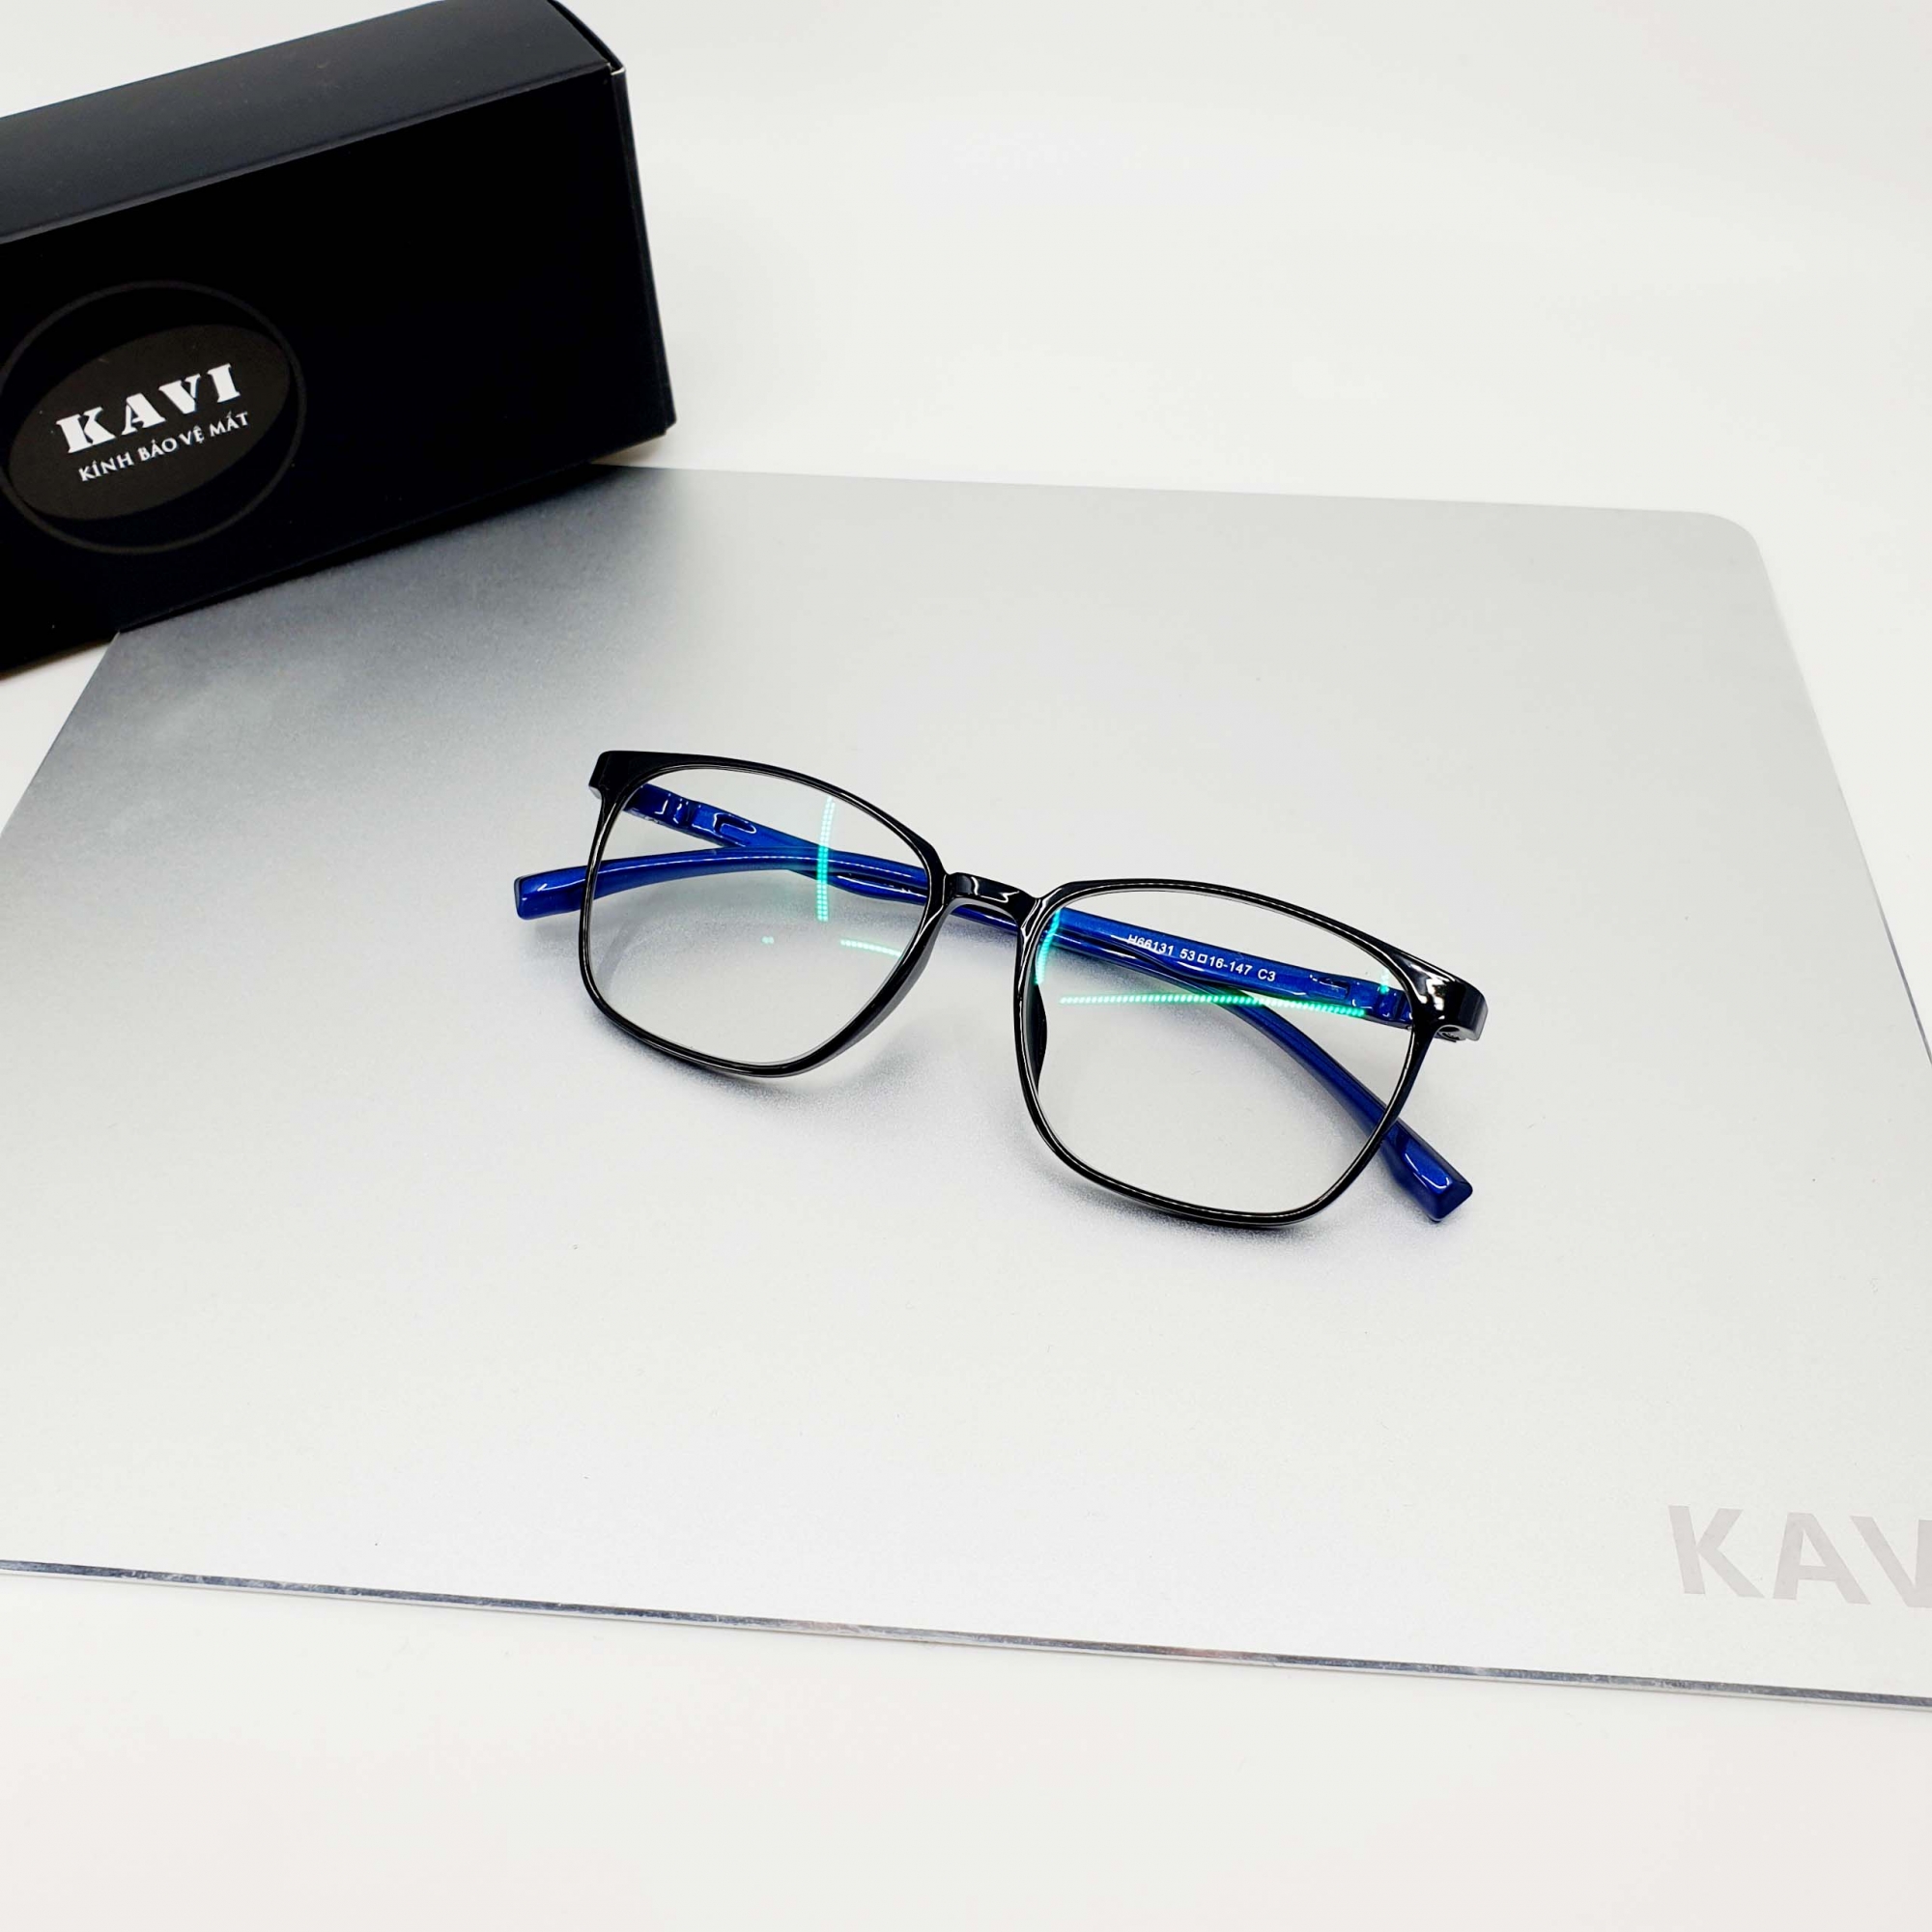 Kính Kavi S6 màu xanh- đổi màu chống ánh sáng xanh máy tính